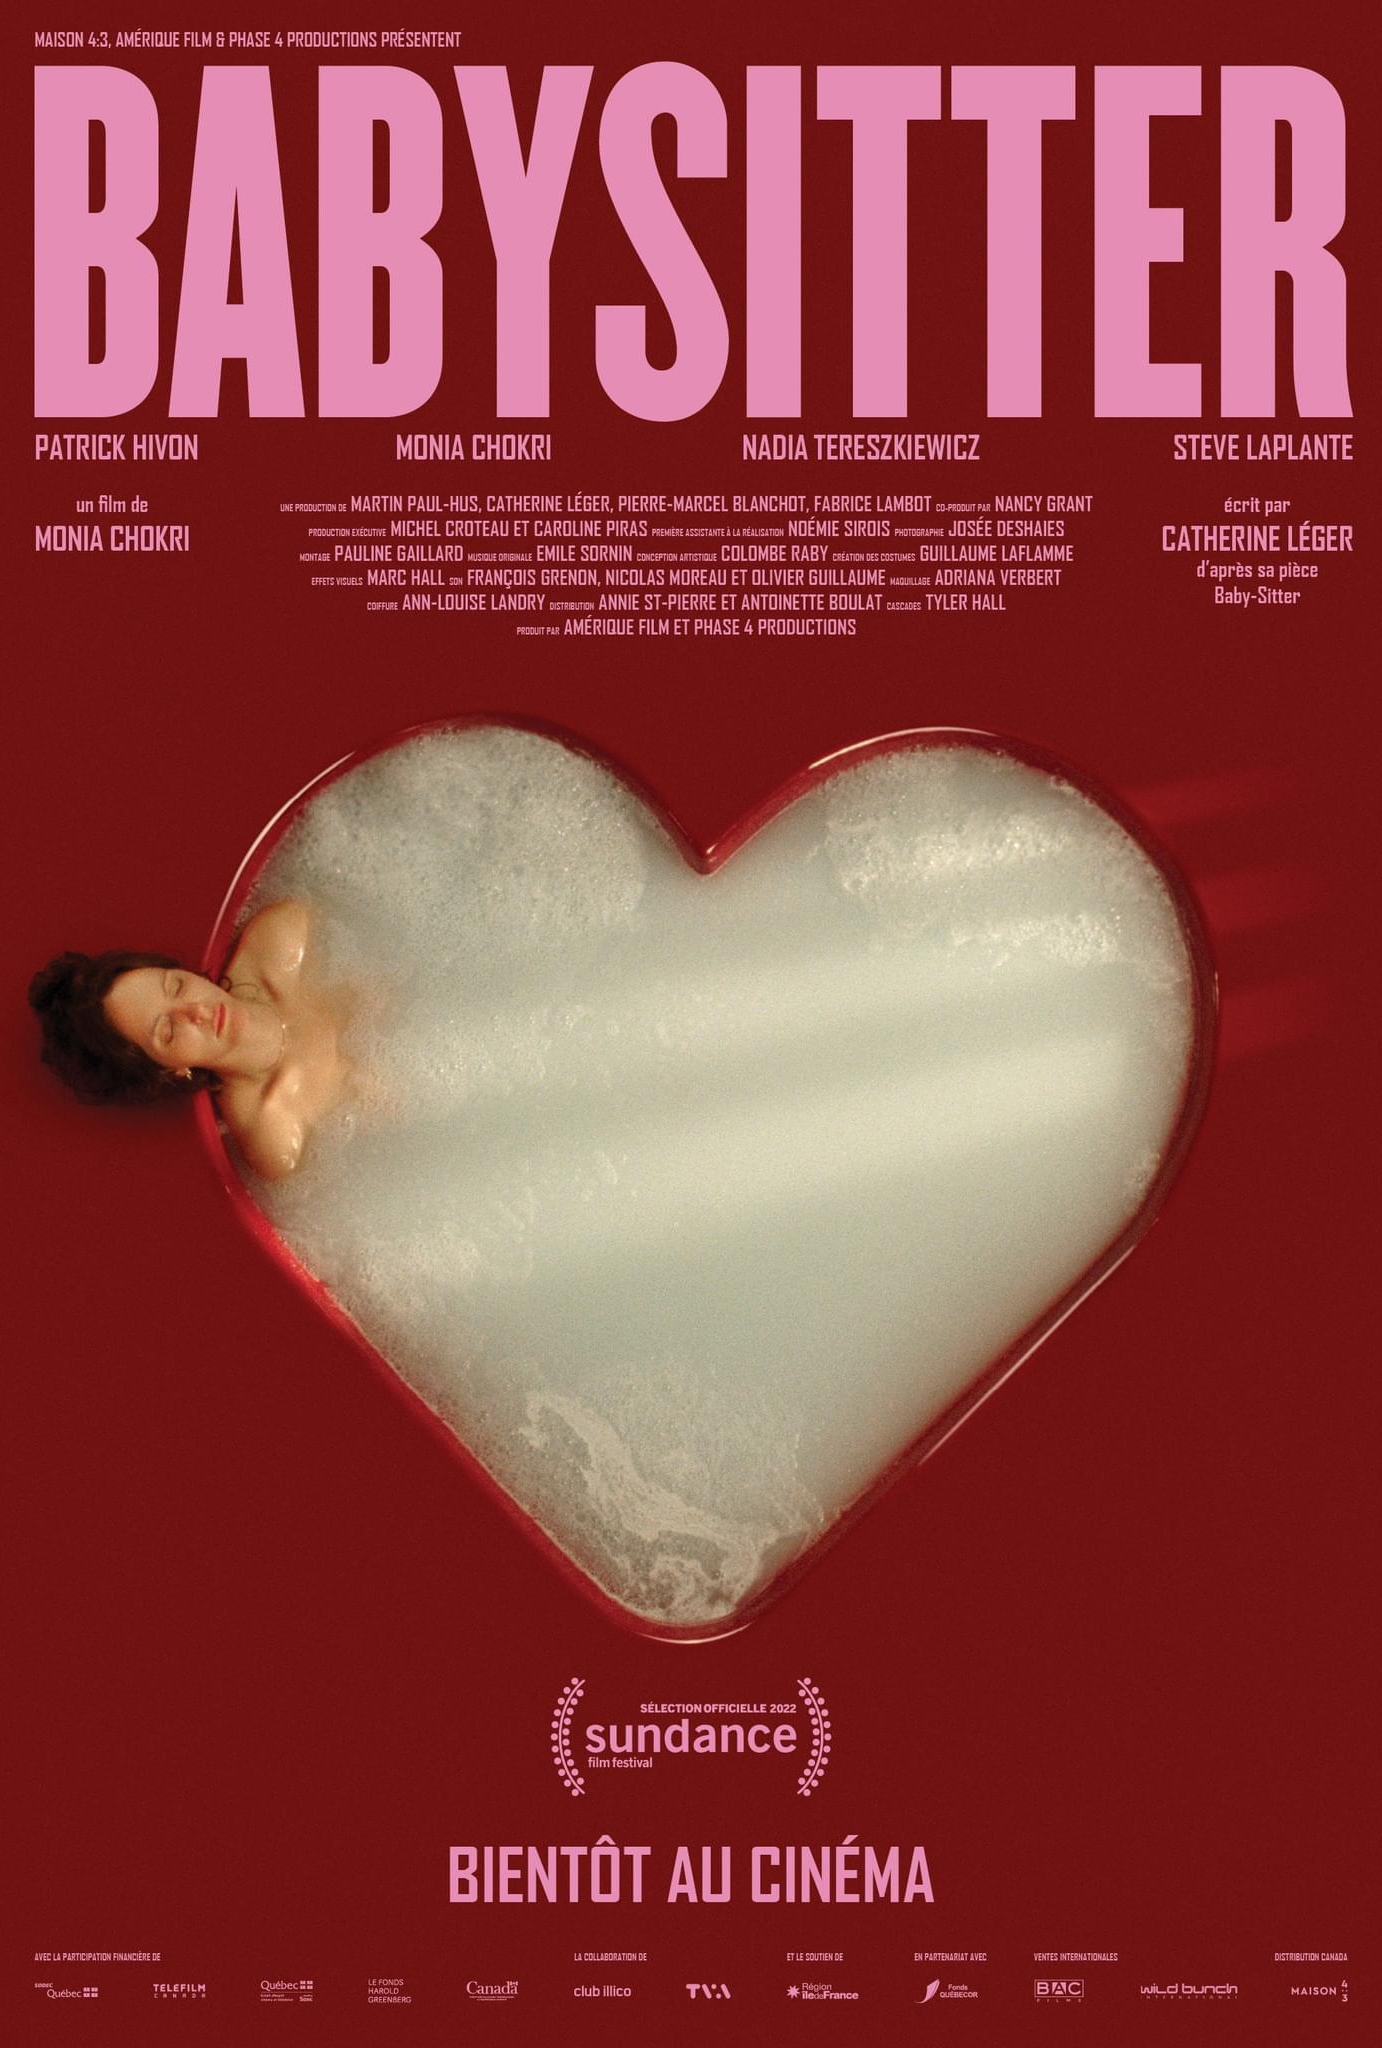 Babysitter film poster